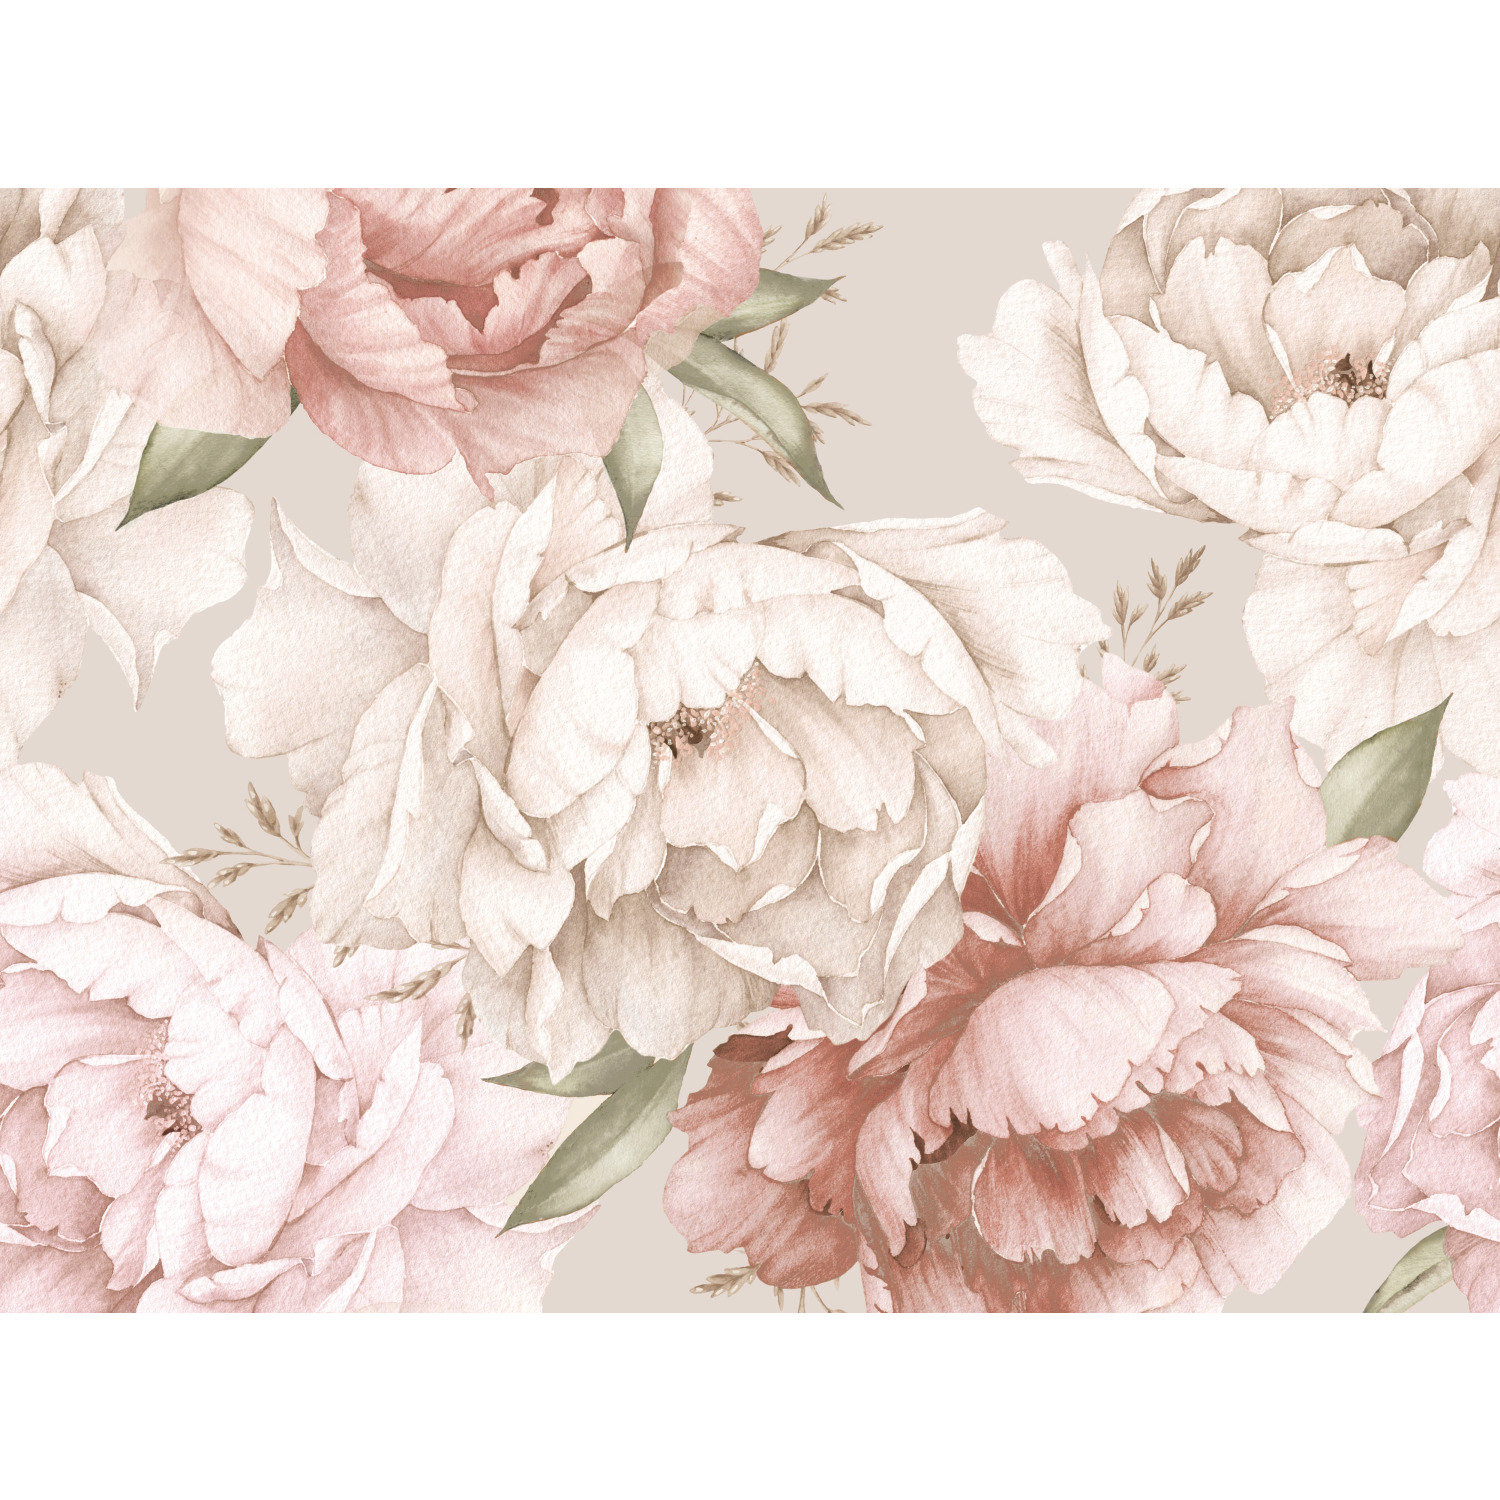 Mr. Kate Watercolor Floral Peel and Stick Wallpaper Mural, Pink & Cream |  Wayfair